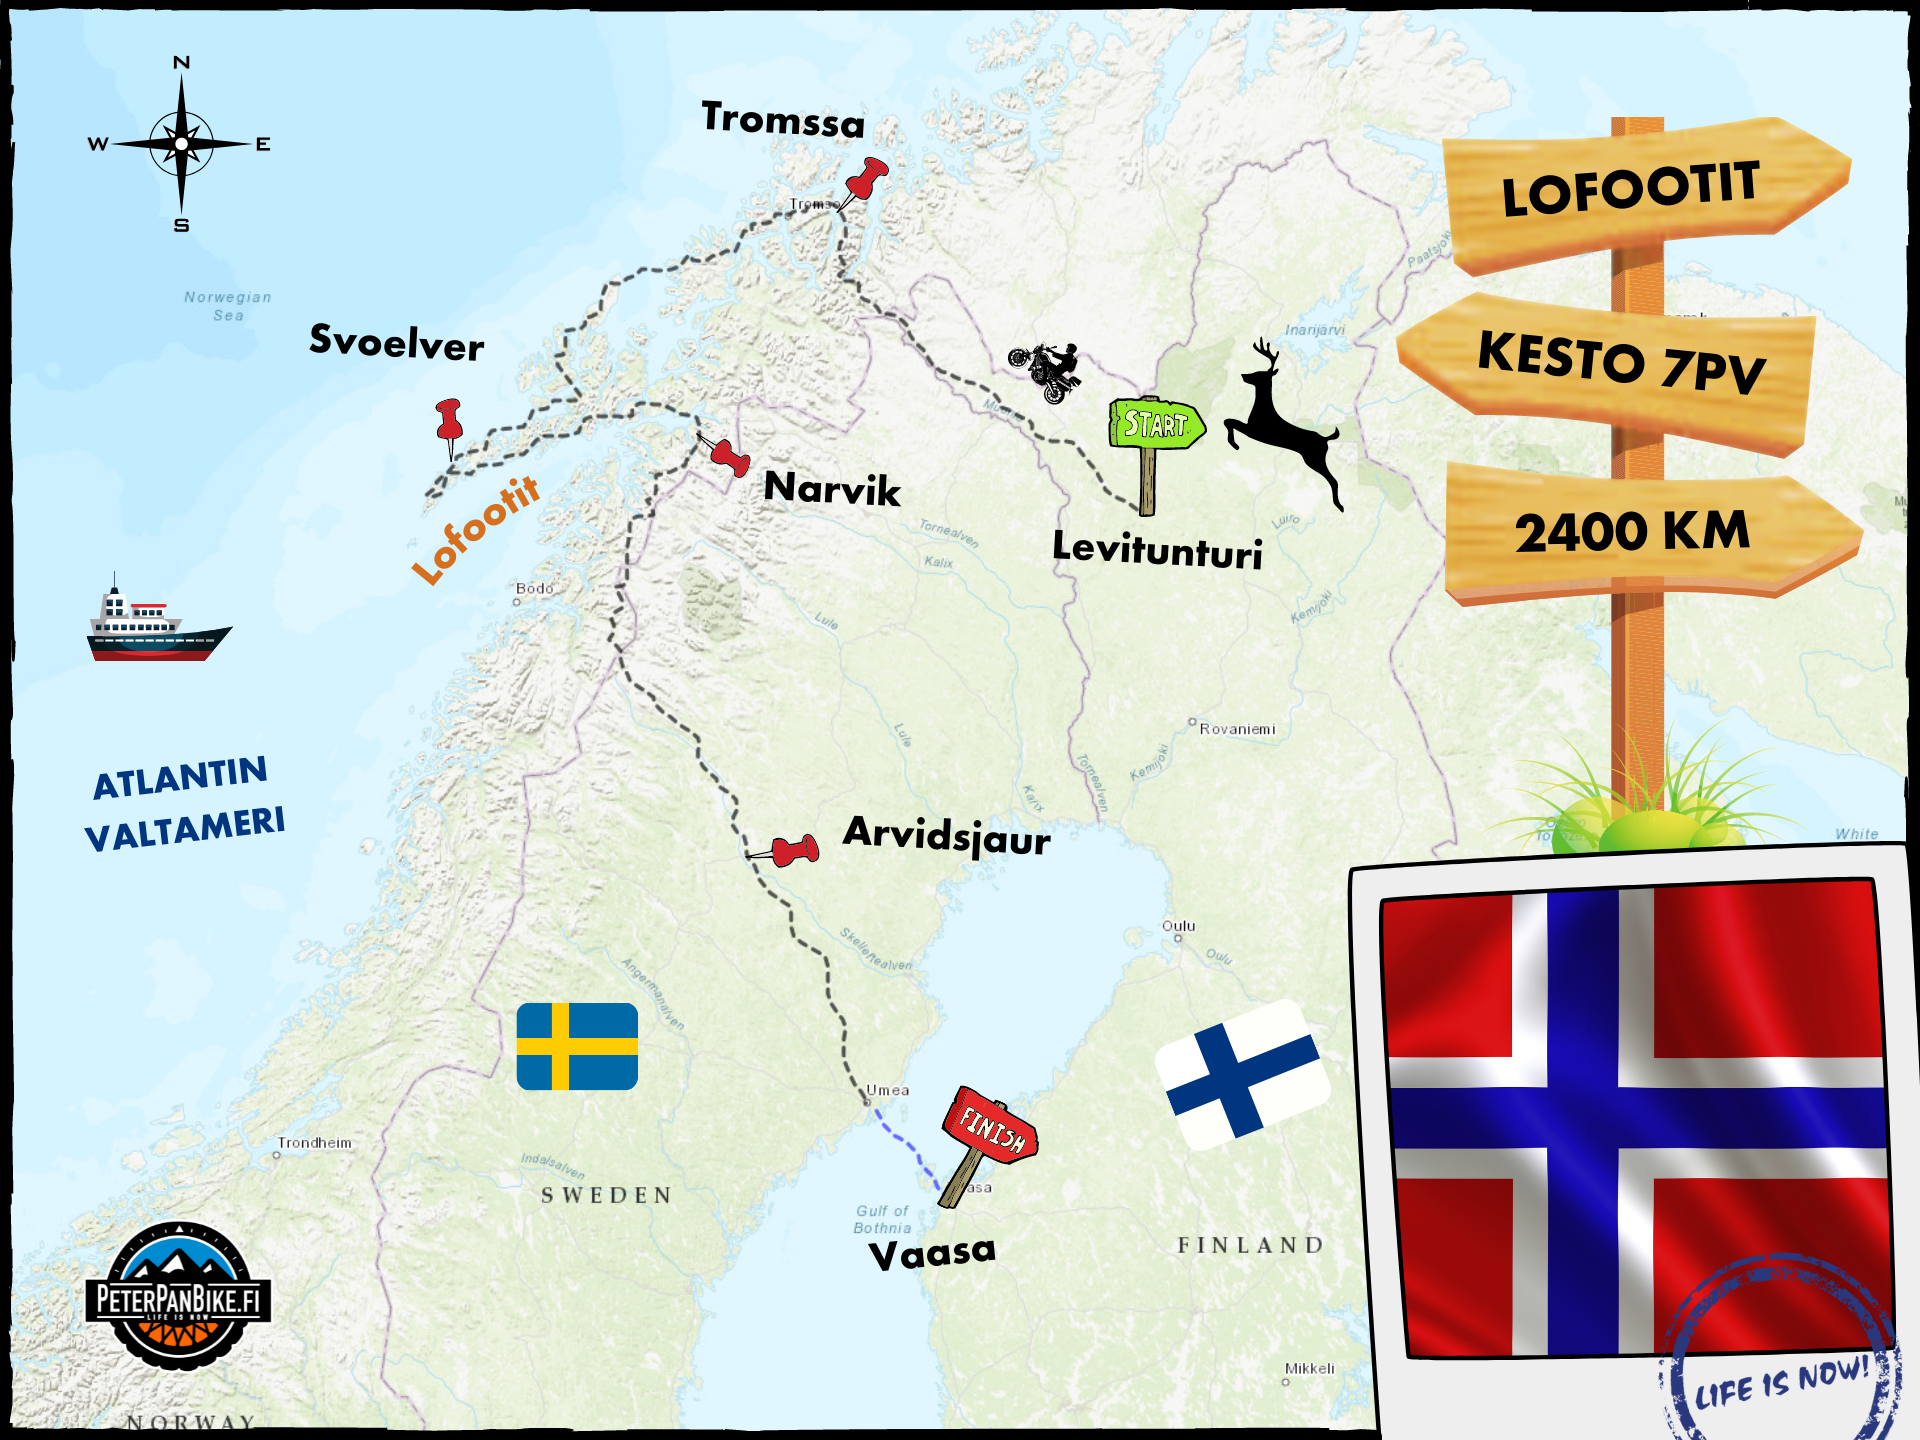 Lofootit moottoripyörillä | Norja — PeterPanBike | Seikkailuja  Moottoripyörällä